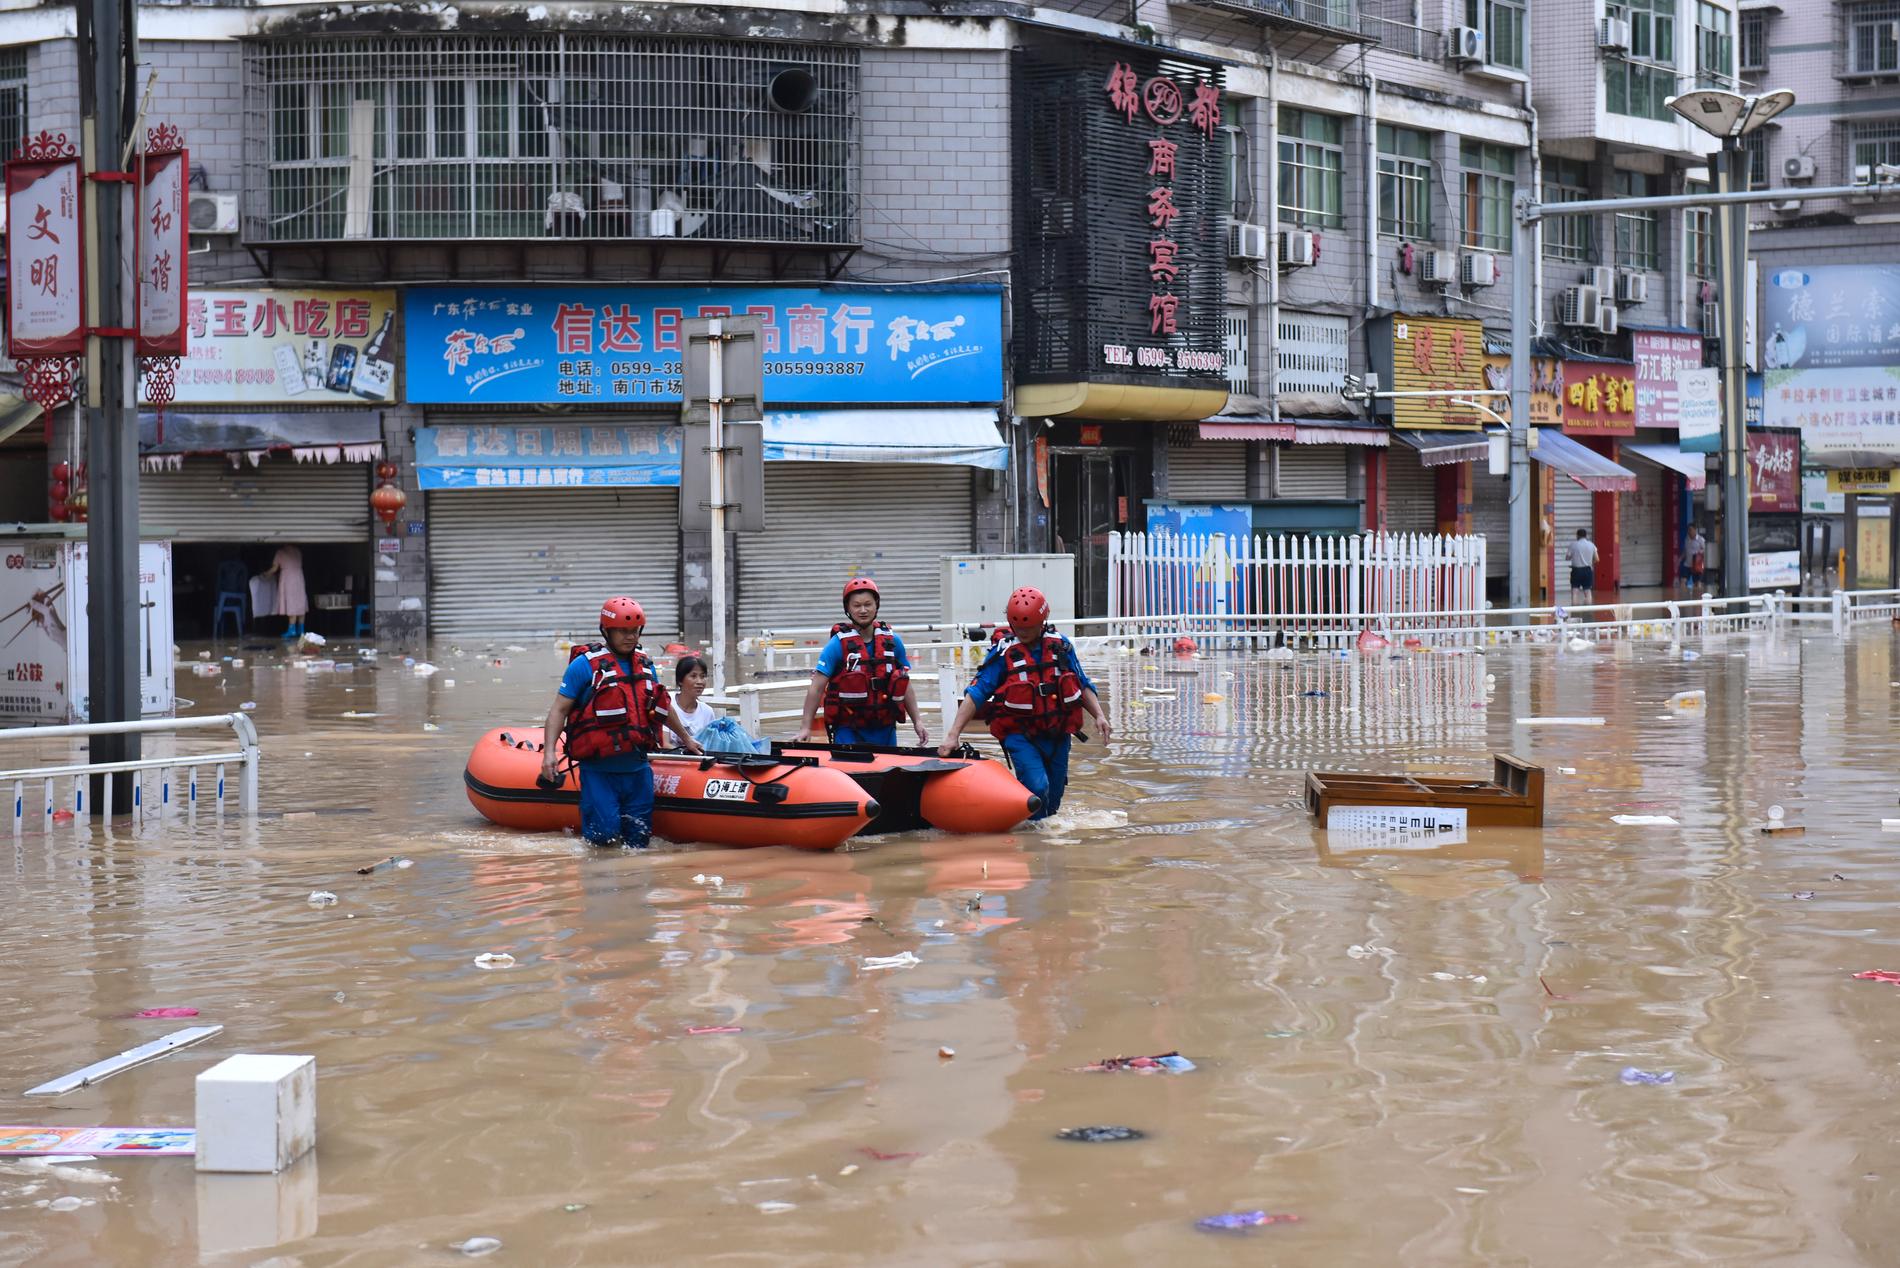 Översvämningar har bland annat drabbat staden Jian'ou i sydöstra Kina. Bilden kommer från den statliga nyhetsbyrån Nya Kina.